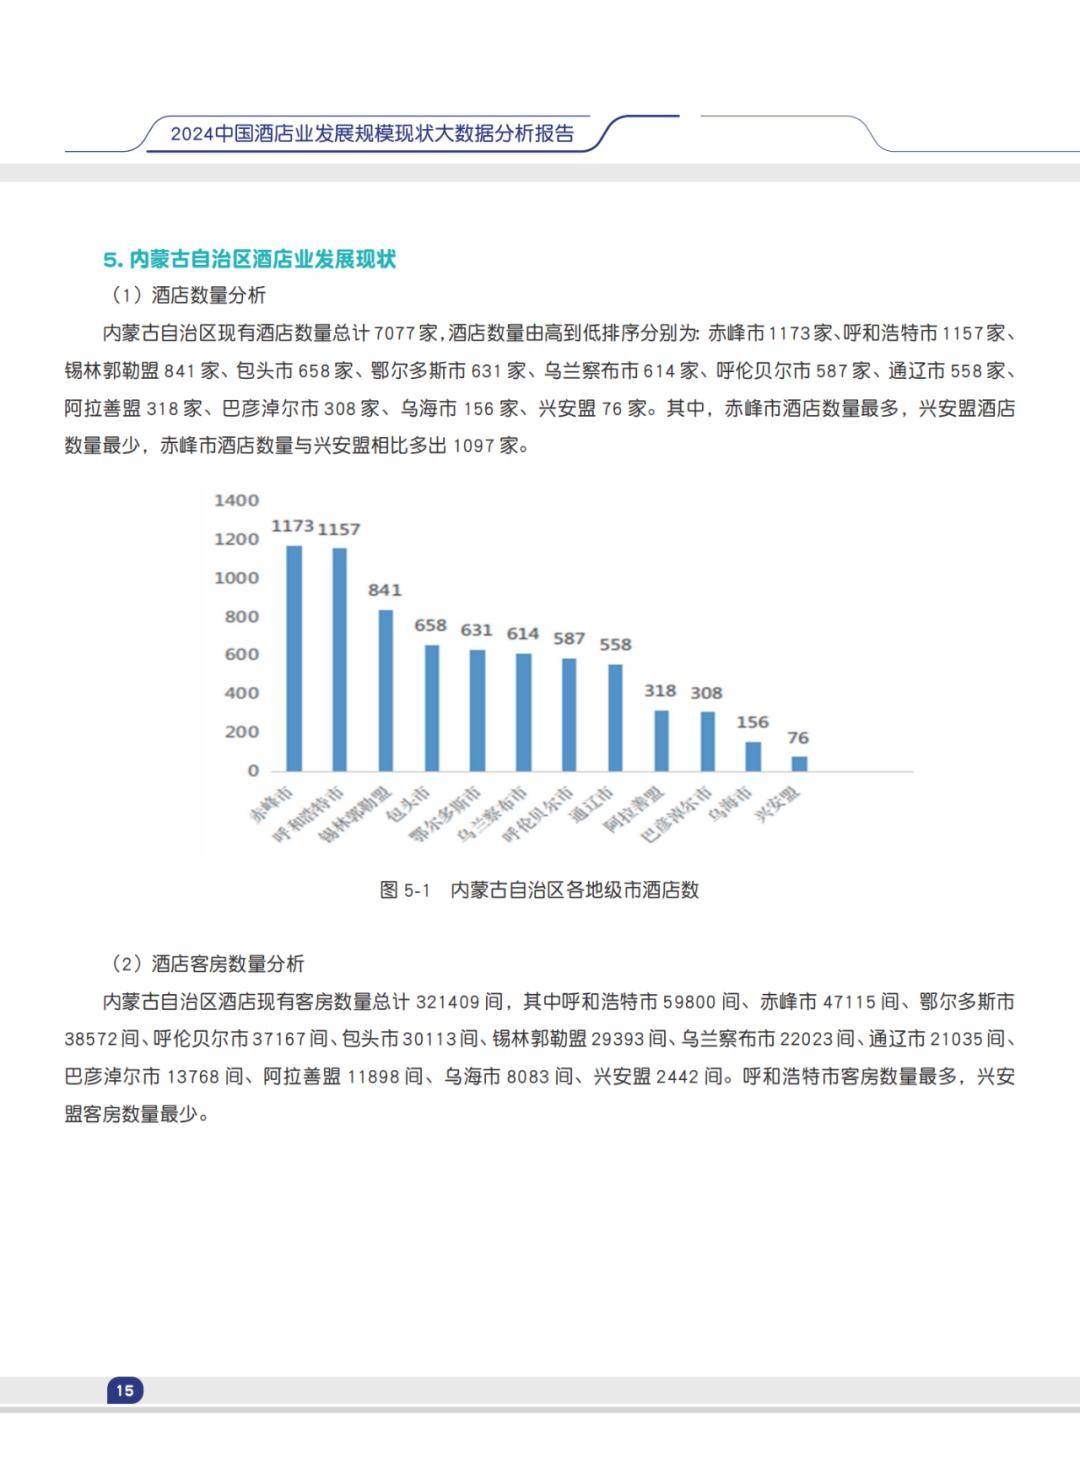 2024中国酒店业发展规模现状大数据分析报告(下载)